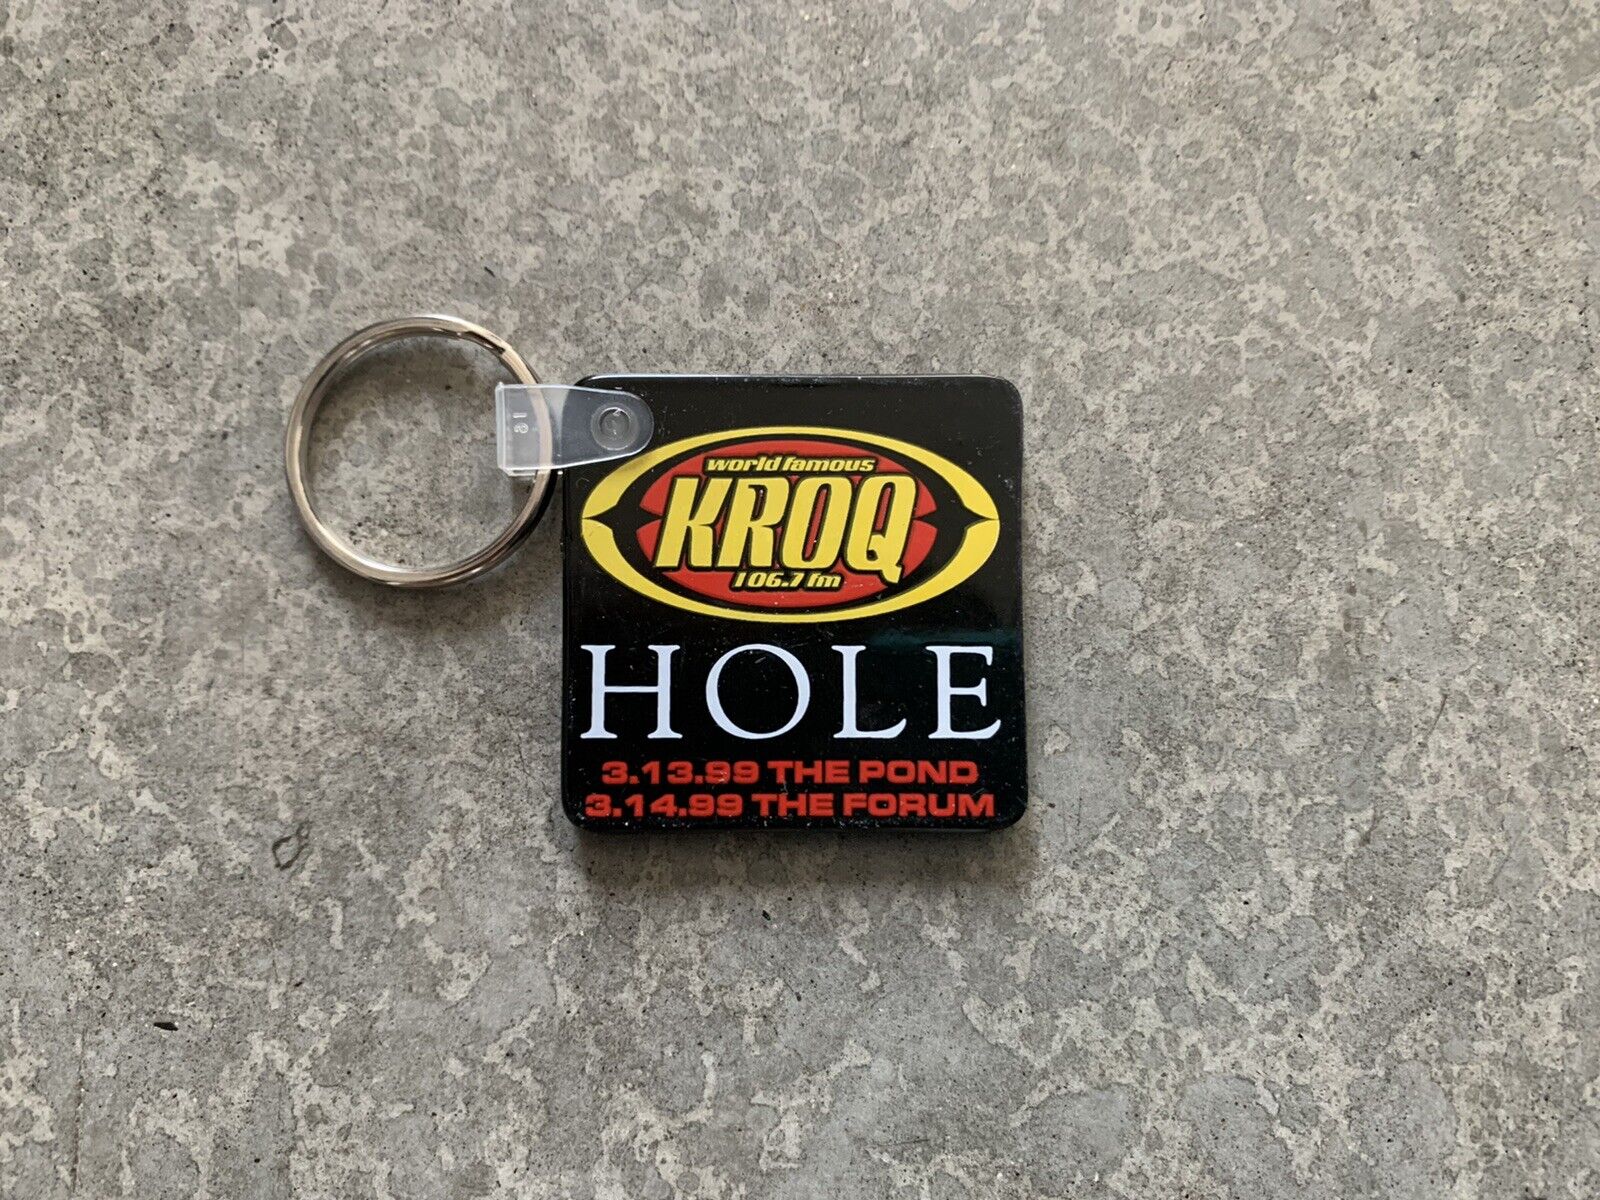 KROQ X Hole & Marilyn Manson - Key Chain / Keychain - 1999 - The Pond /The Forum